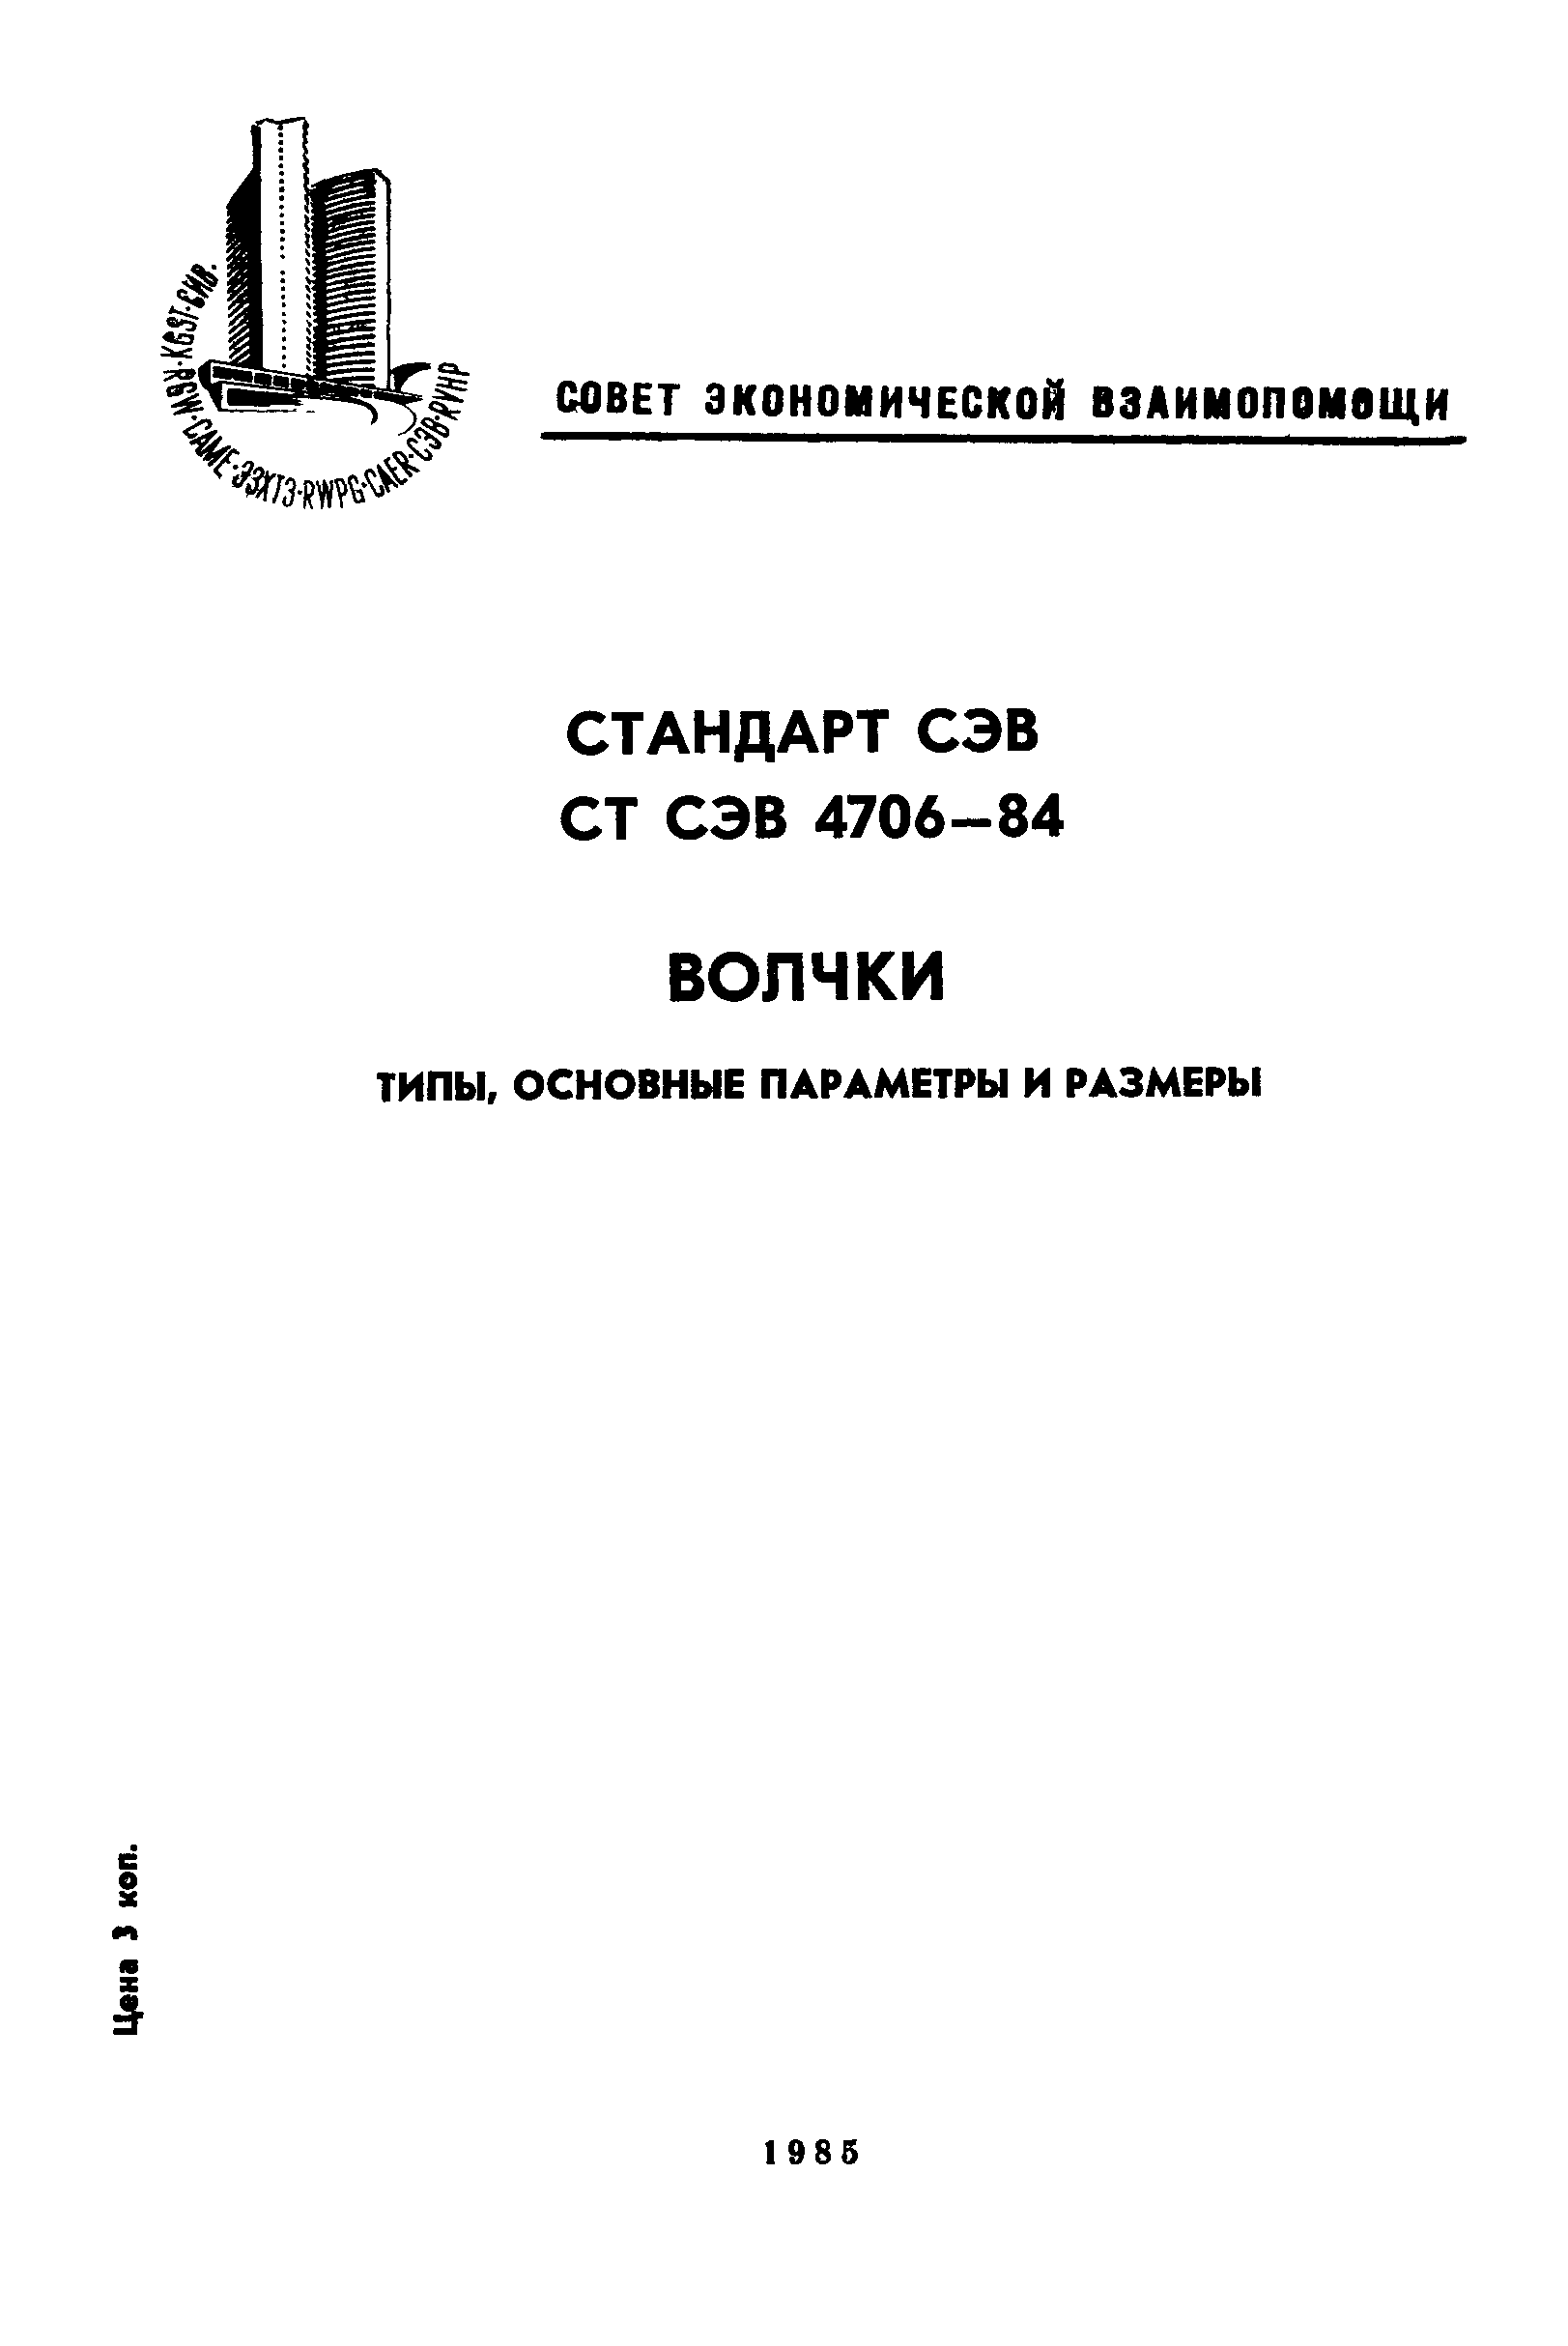 СТ СЭВ 4706-84